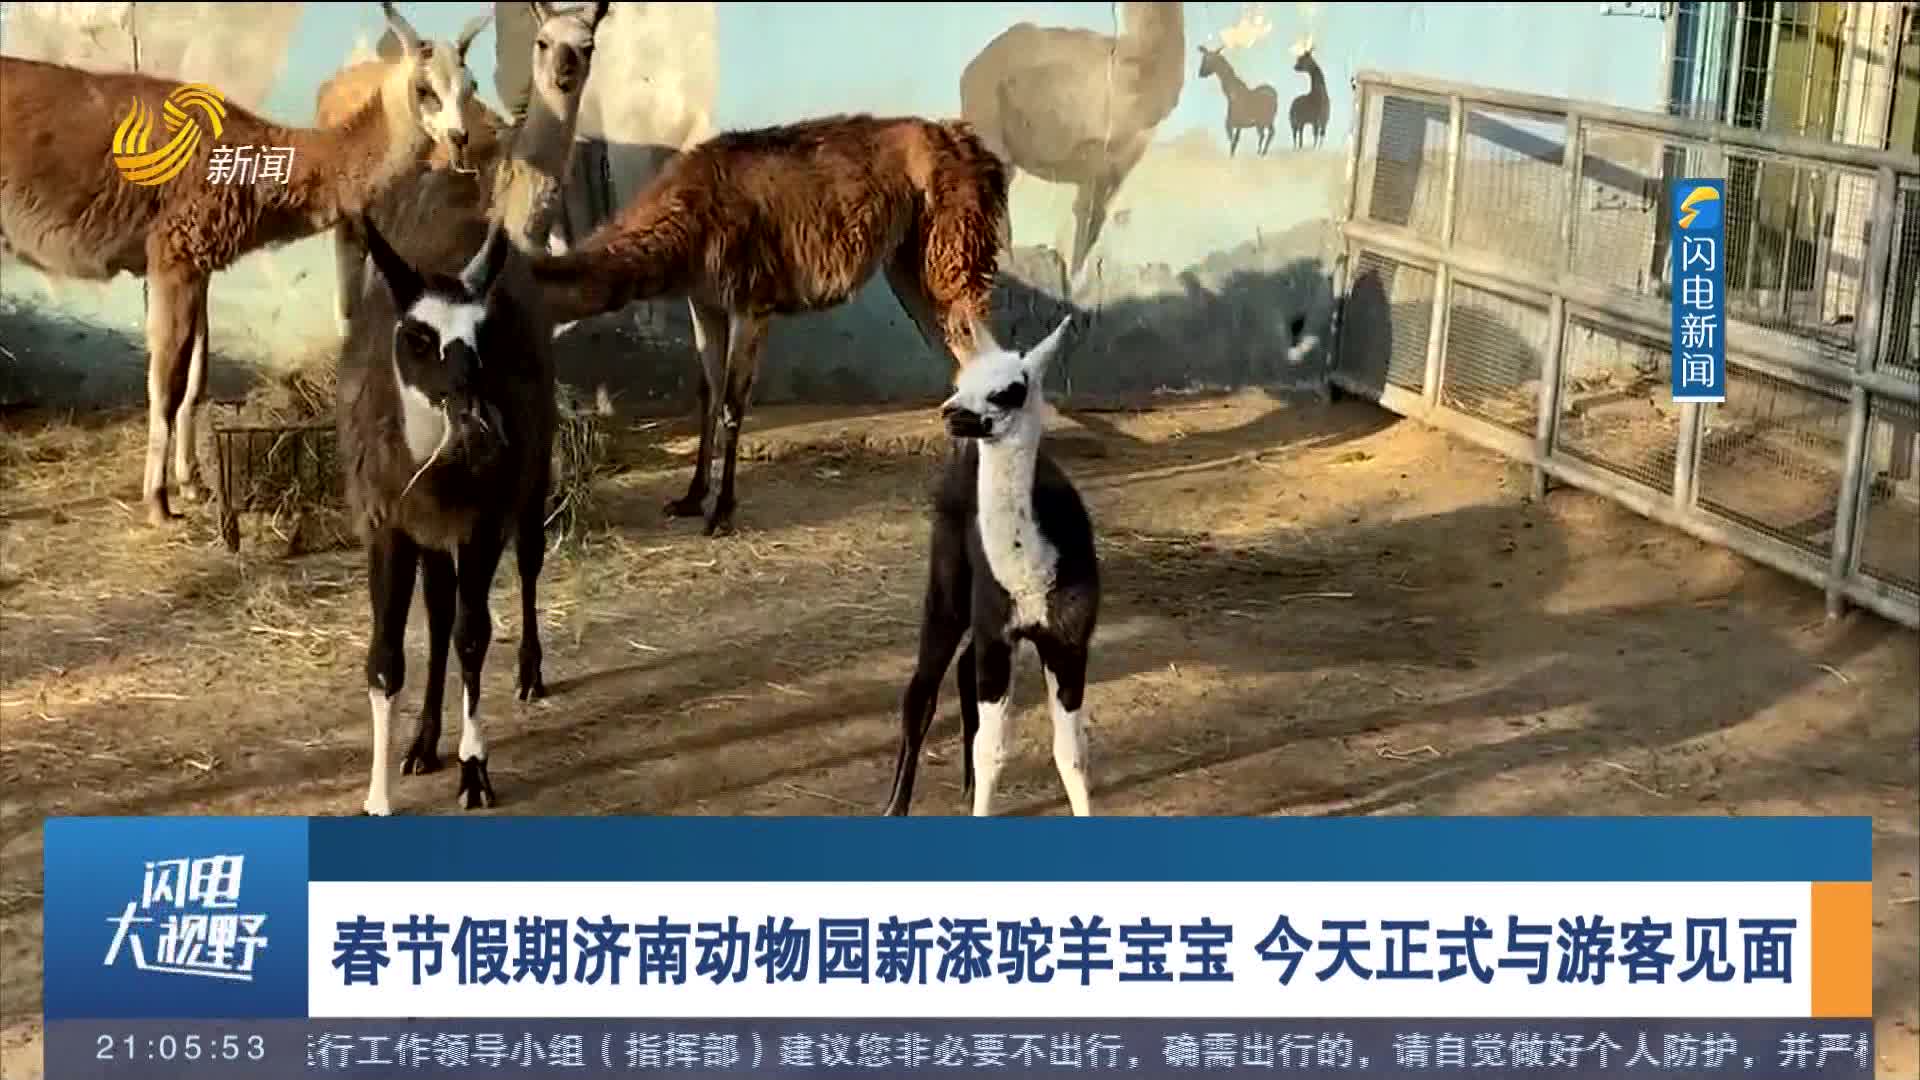 春节假期济南动物园新添驼羊宝宝 今天正式与游客见面